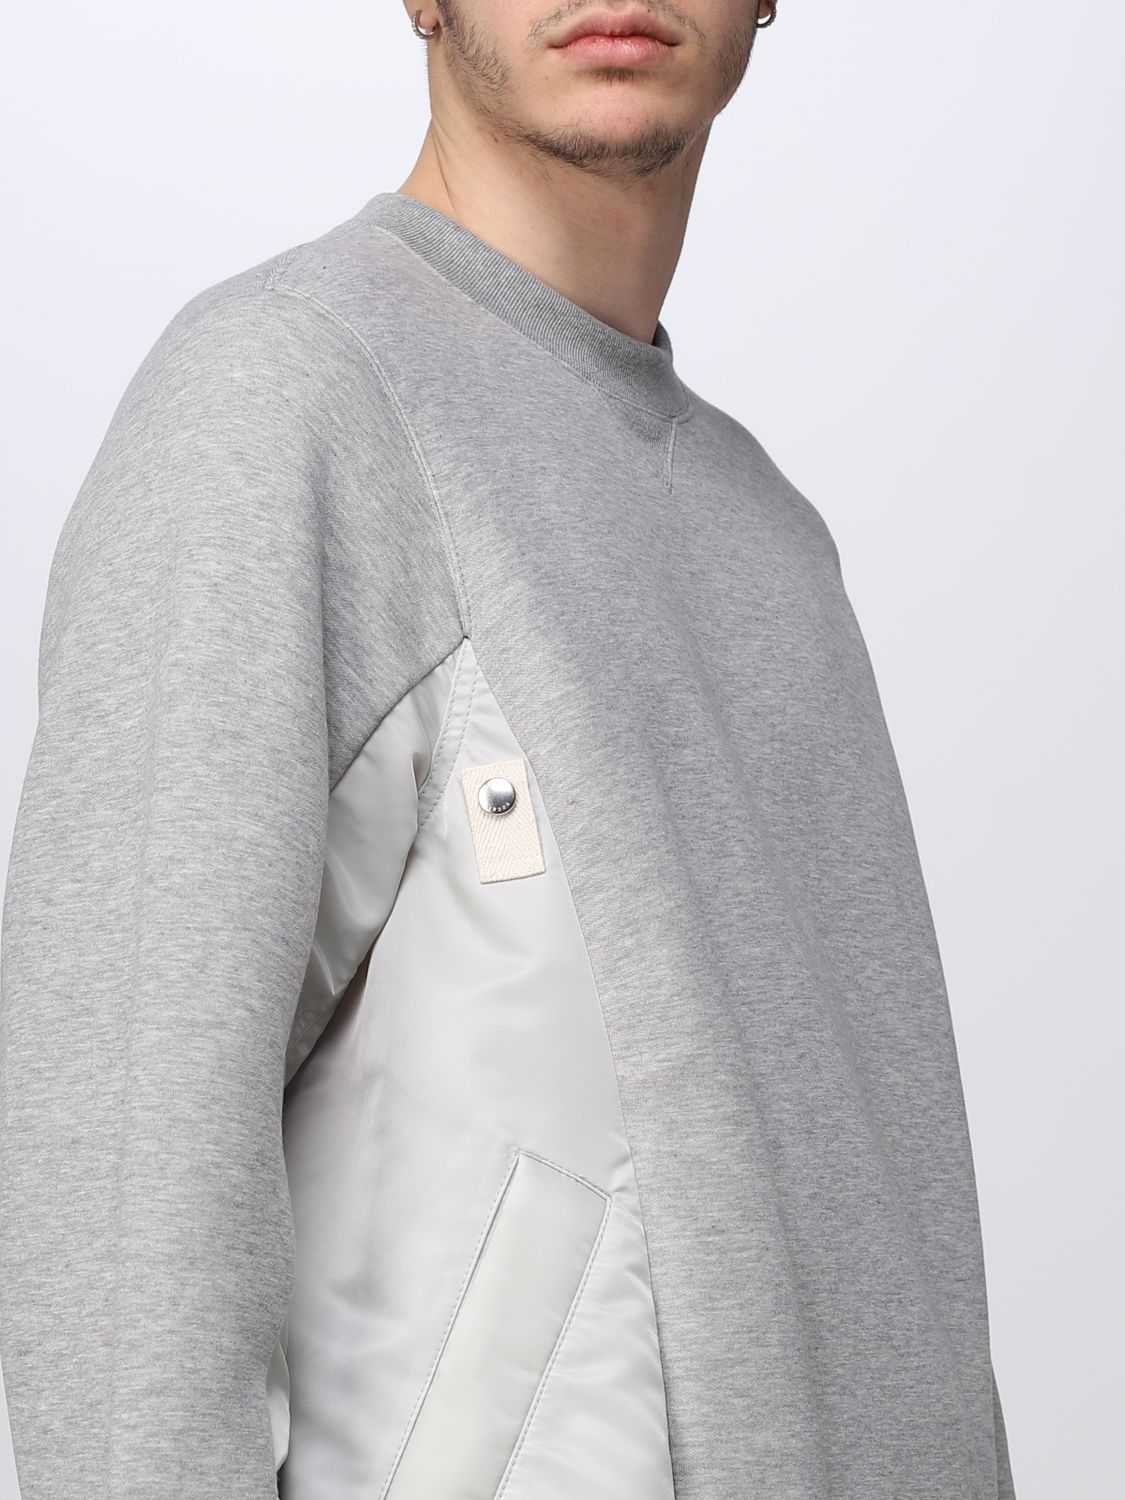 Sweater Sacai: Sacai sweater for man grey 5